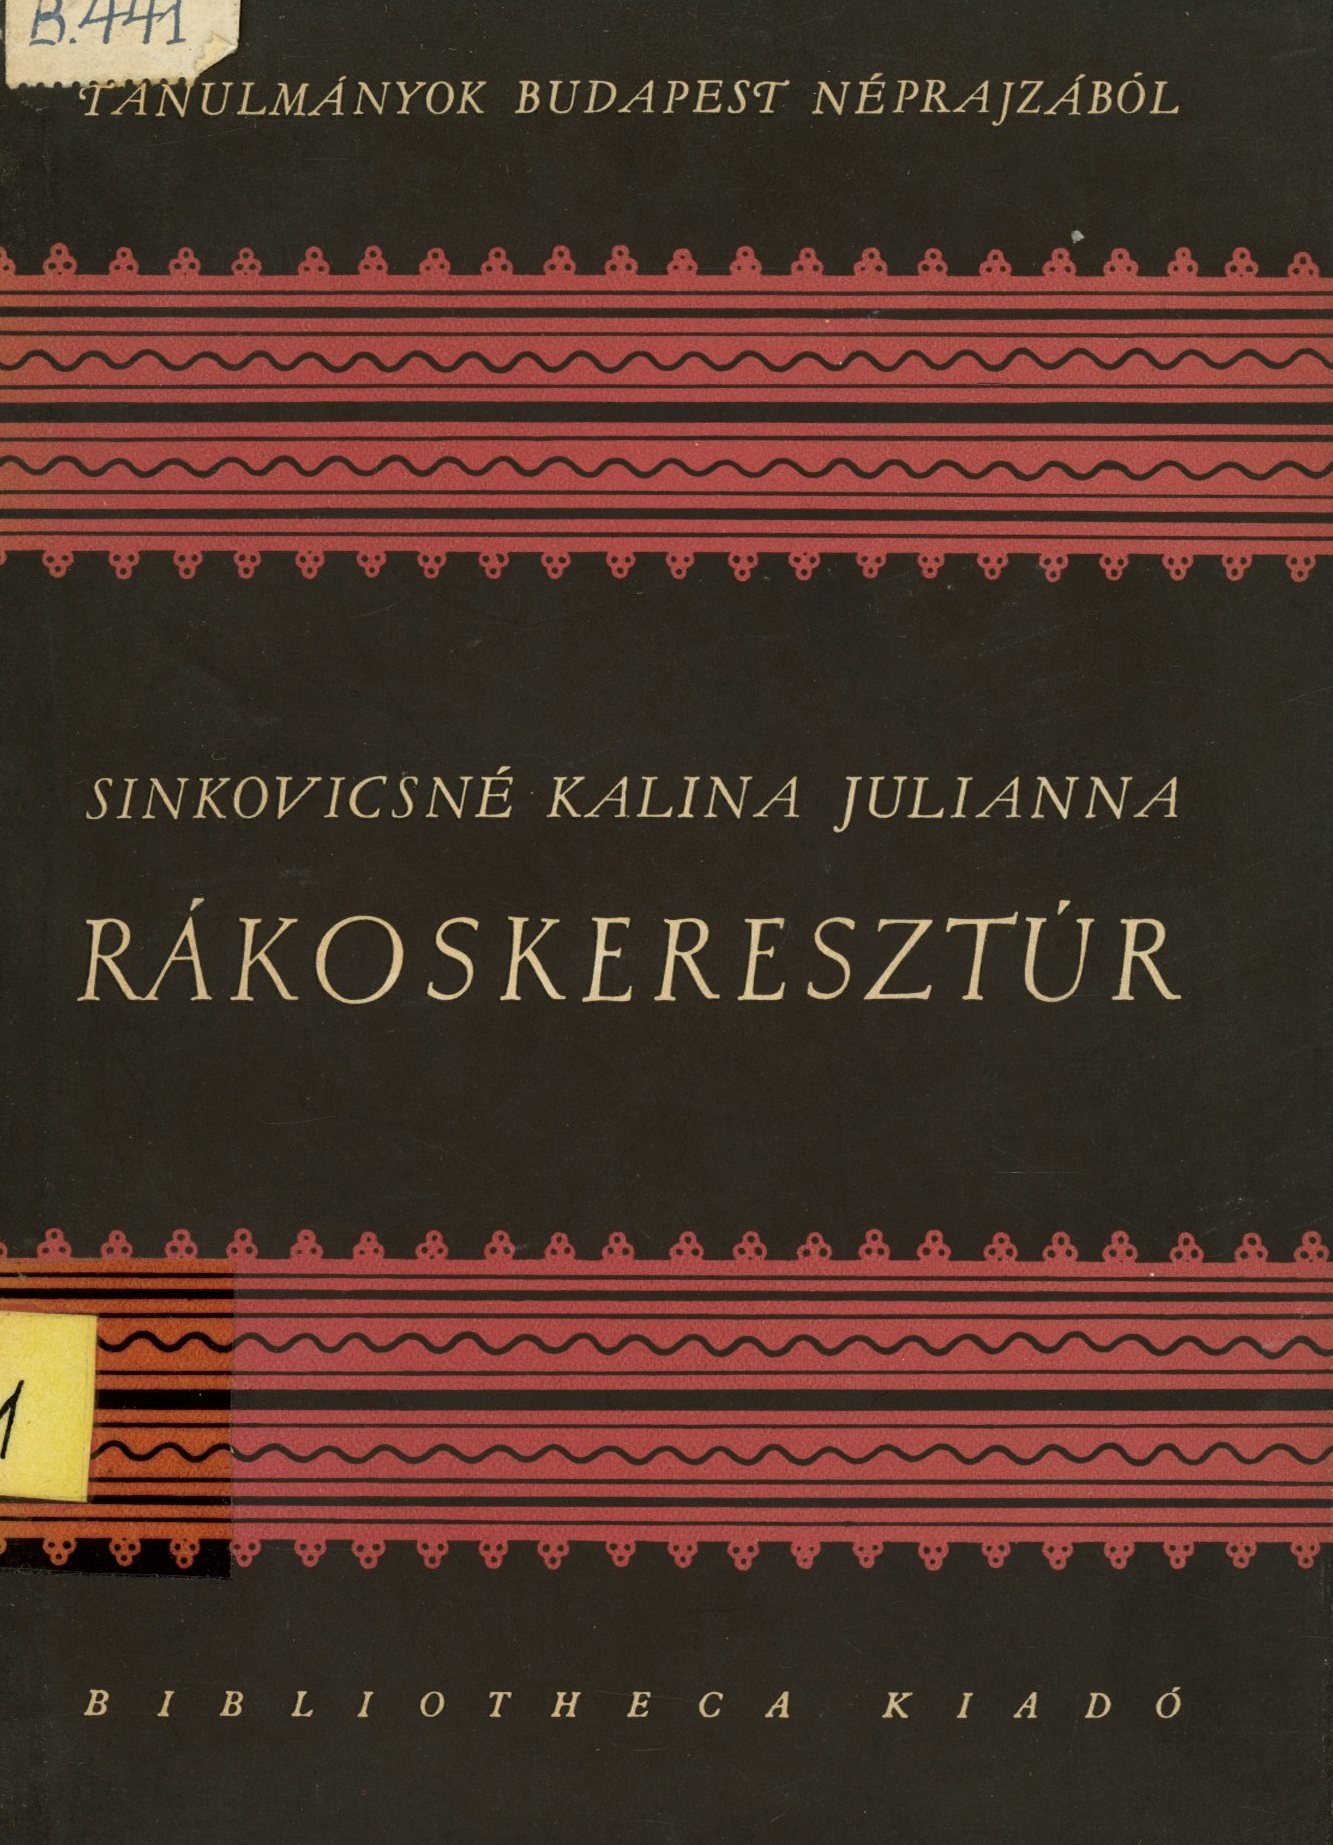 Sinkovics Istvánné Kalina Julianna (Erkel Ferenc Múzeum és Könyvtár, Gyula CC BY-NC-SA)